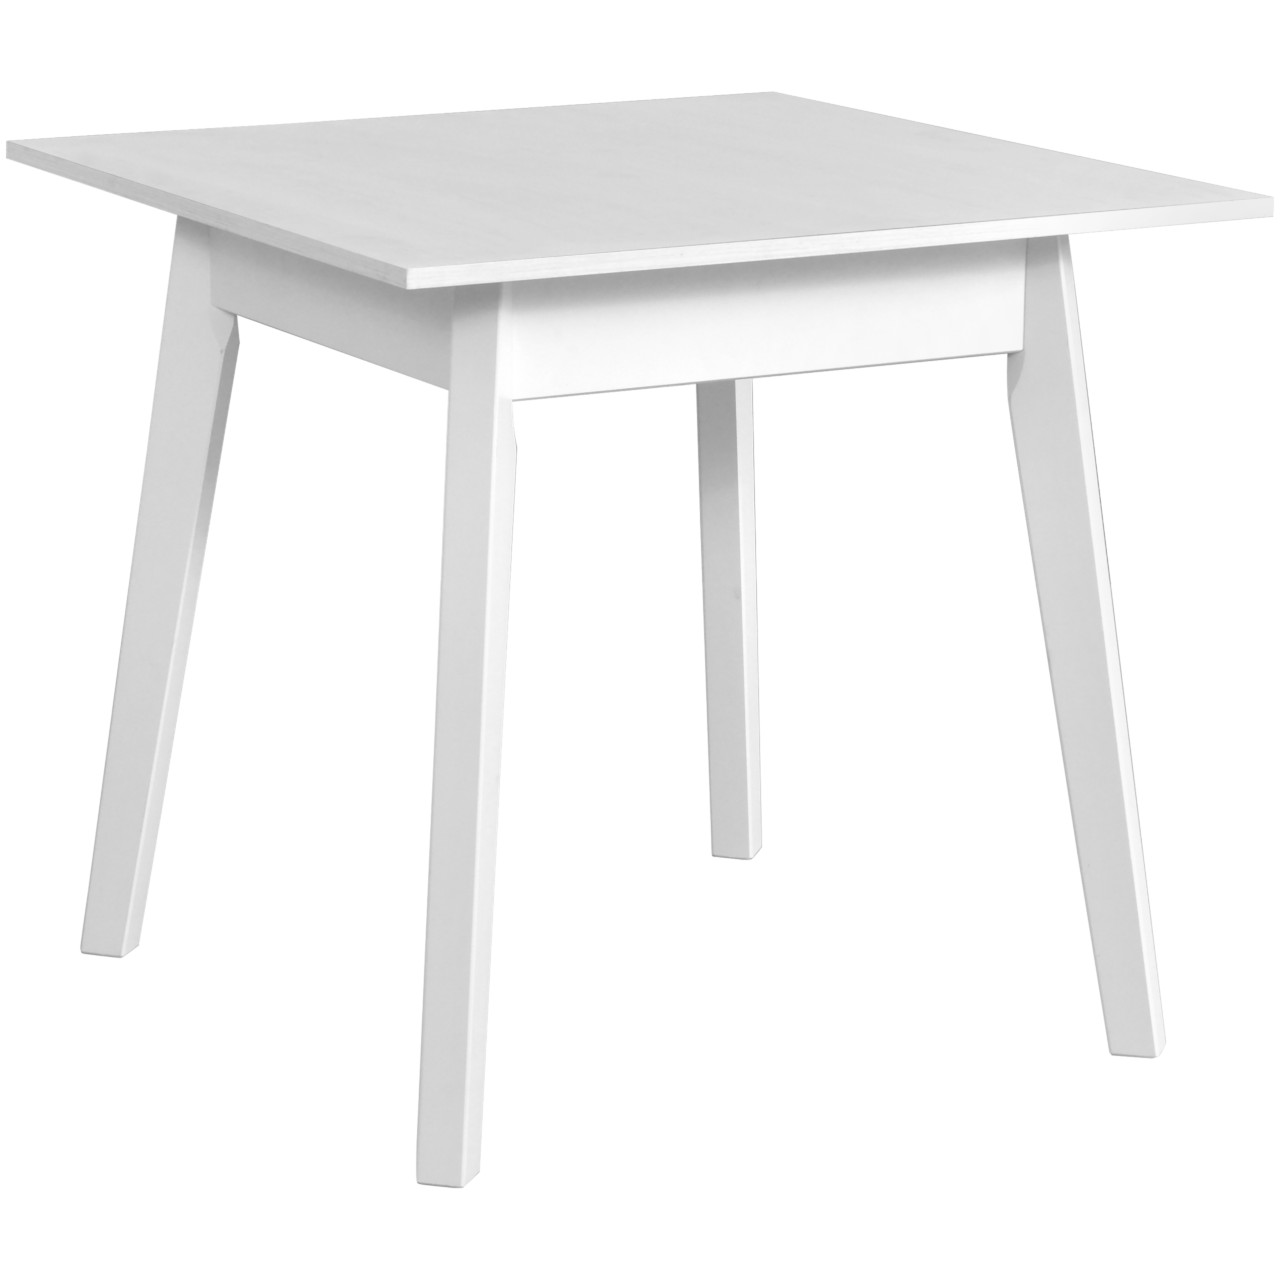 Table OSLO 1 80x80 white laminate